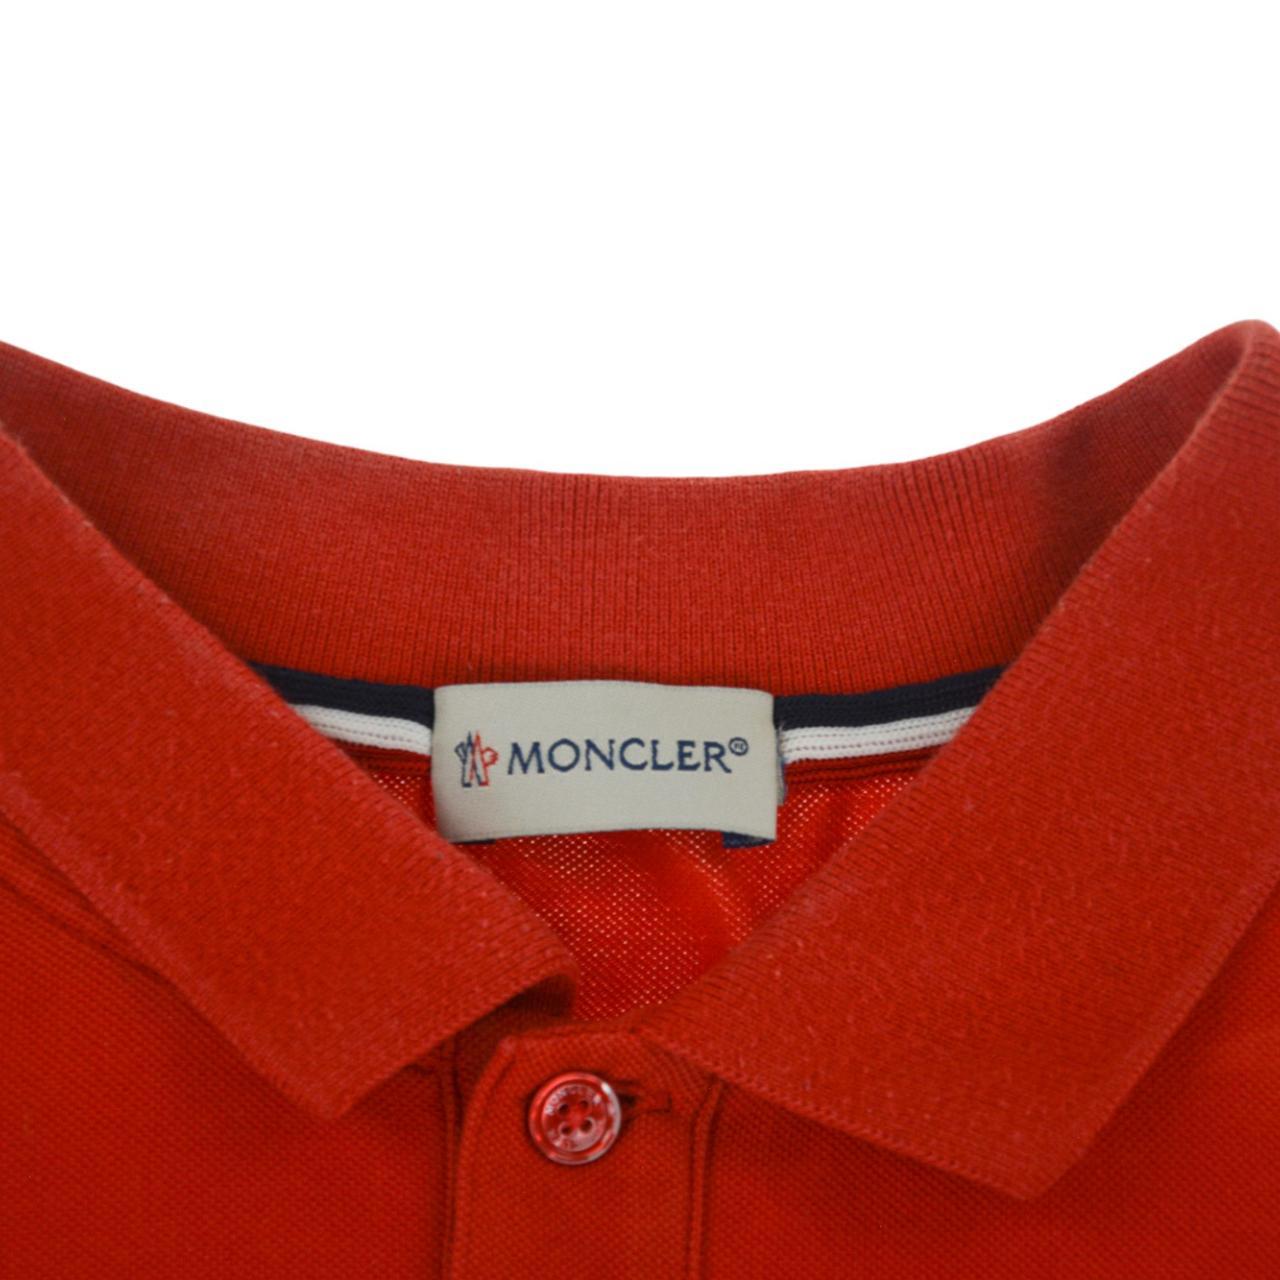 Vintage Moncler Polo Shirt Size L